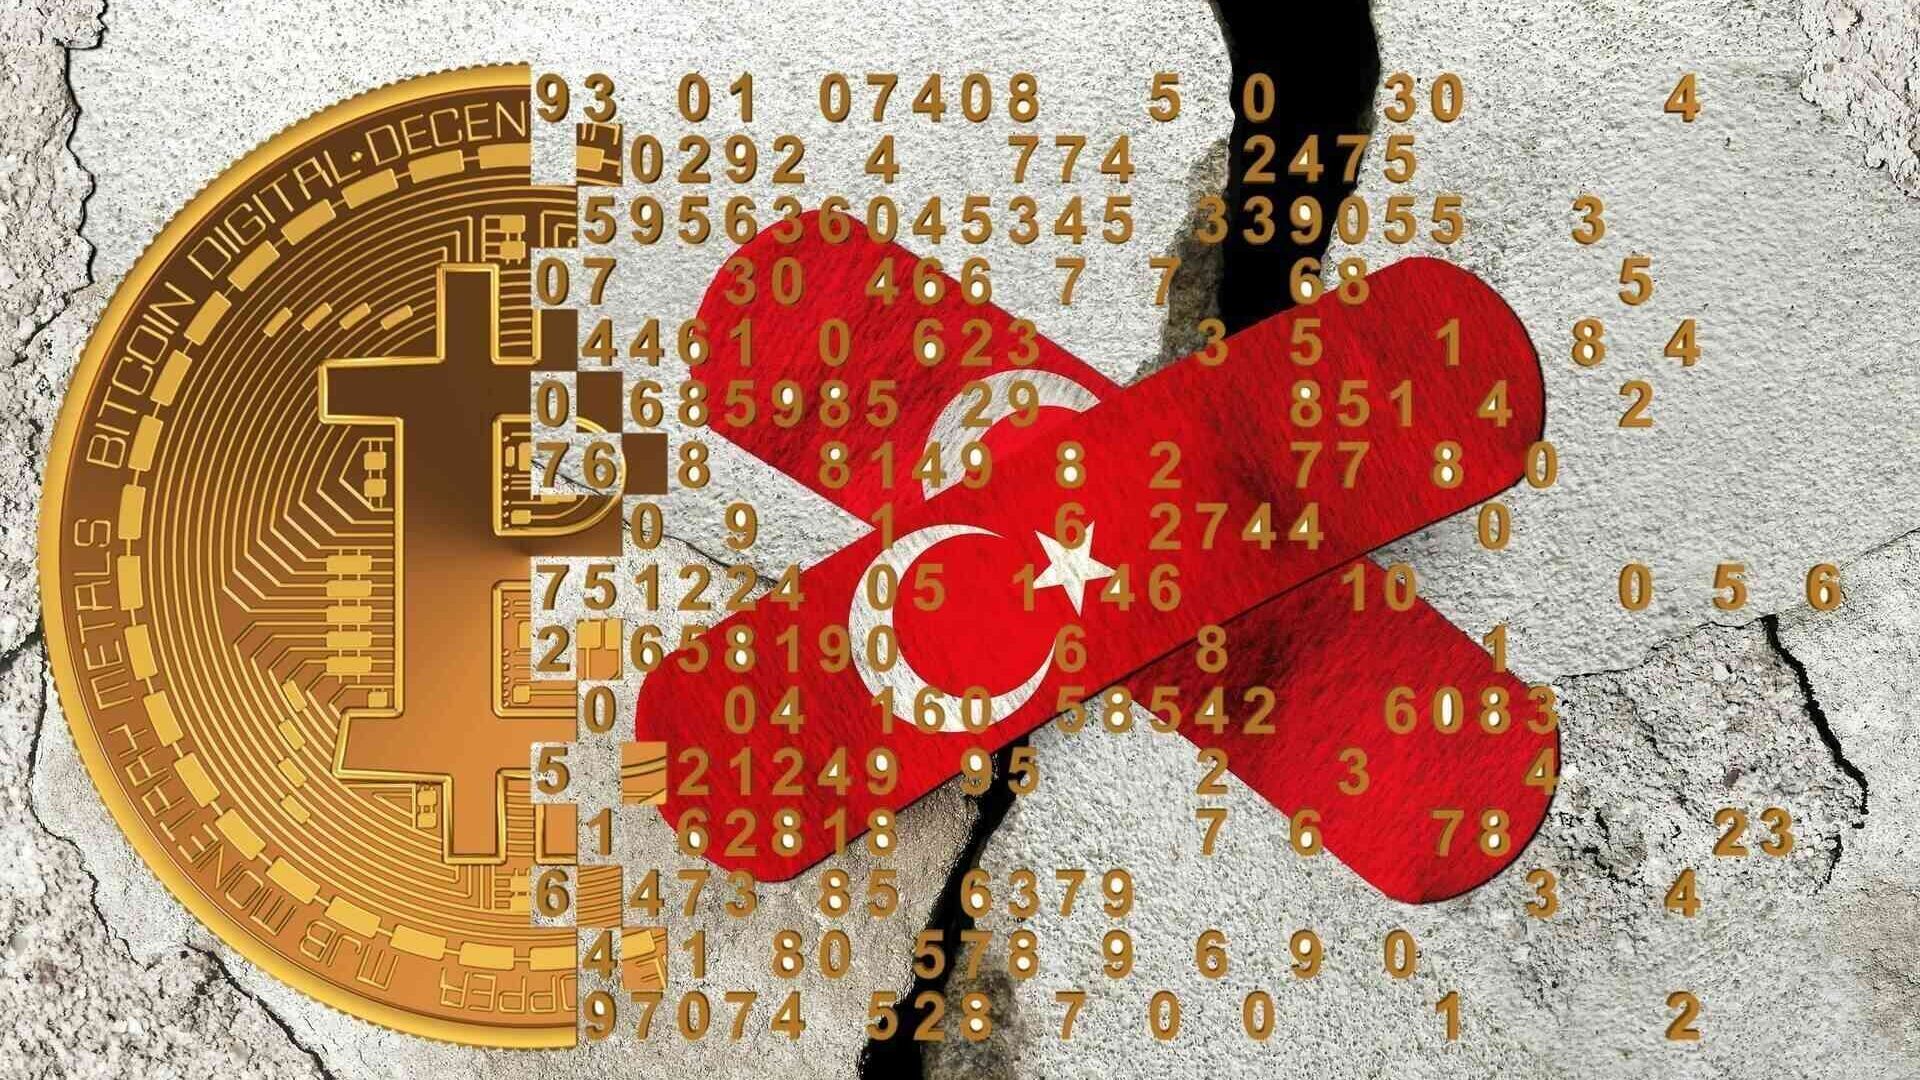 Cryptovalute: in seguito al violento terremoto avvenuto in Anatolia meridionale fra il 5 e il 6 febbraio 2023, anche l'industria globale delle cryptovalute e della Blockchain si sta impegnando ad aiutare le vittime con ingenti donazioni